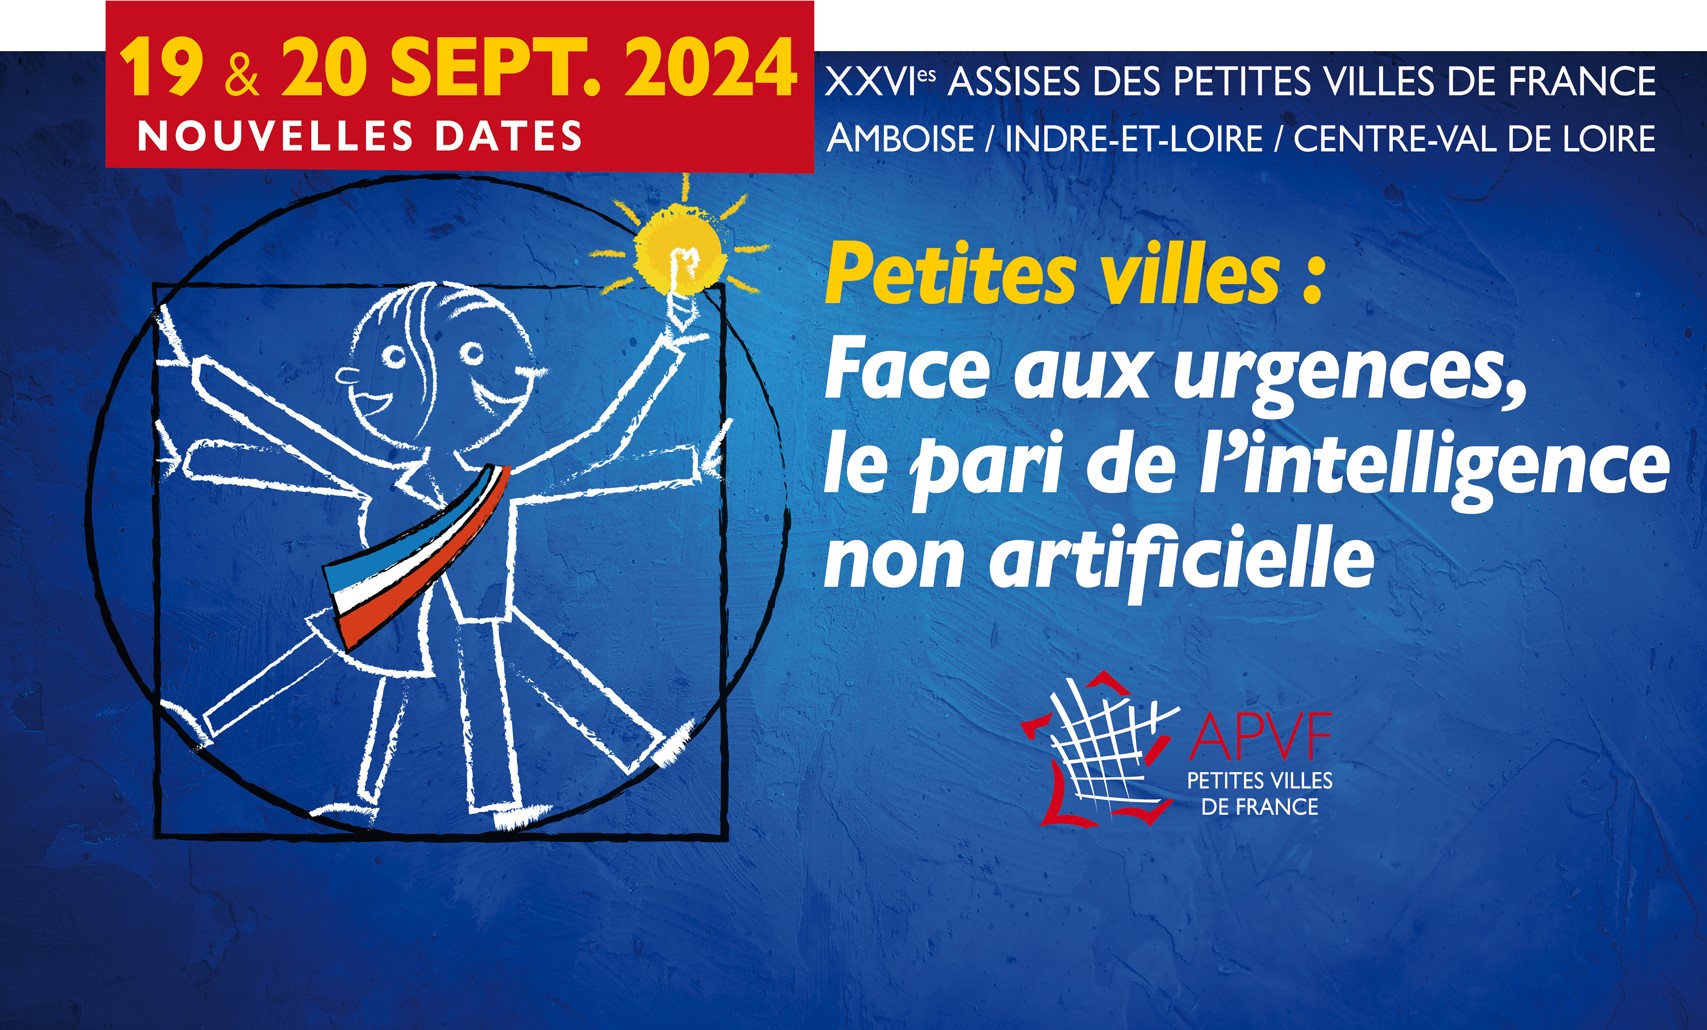 Report des Assises des petites villes aux 19 et 20 septembre 2024 à Amboise : le nouveau programme est disponible !